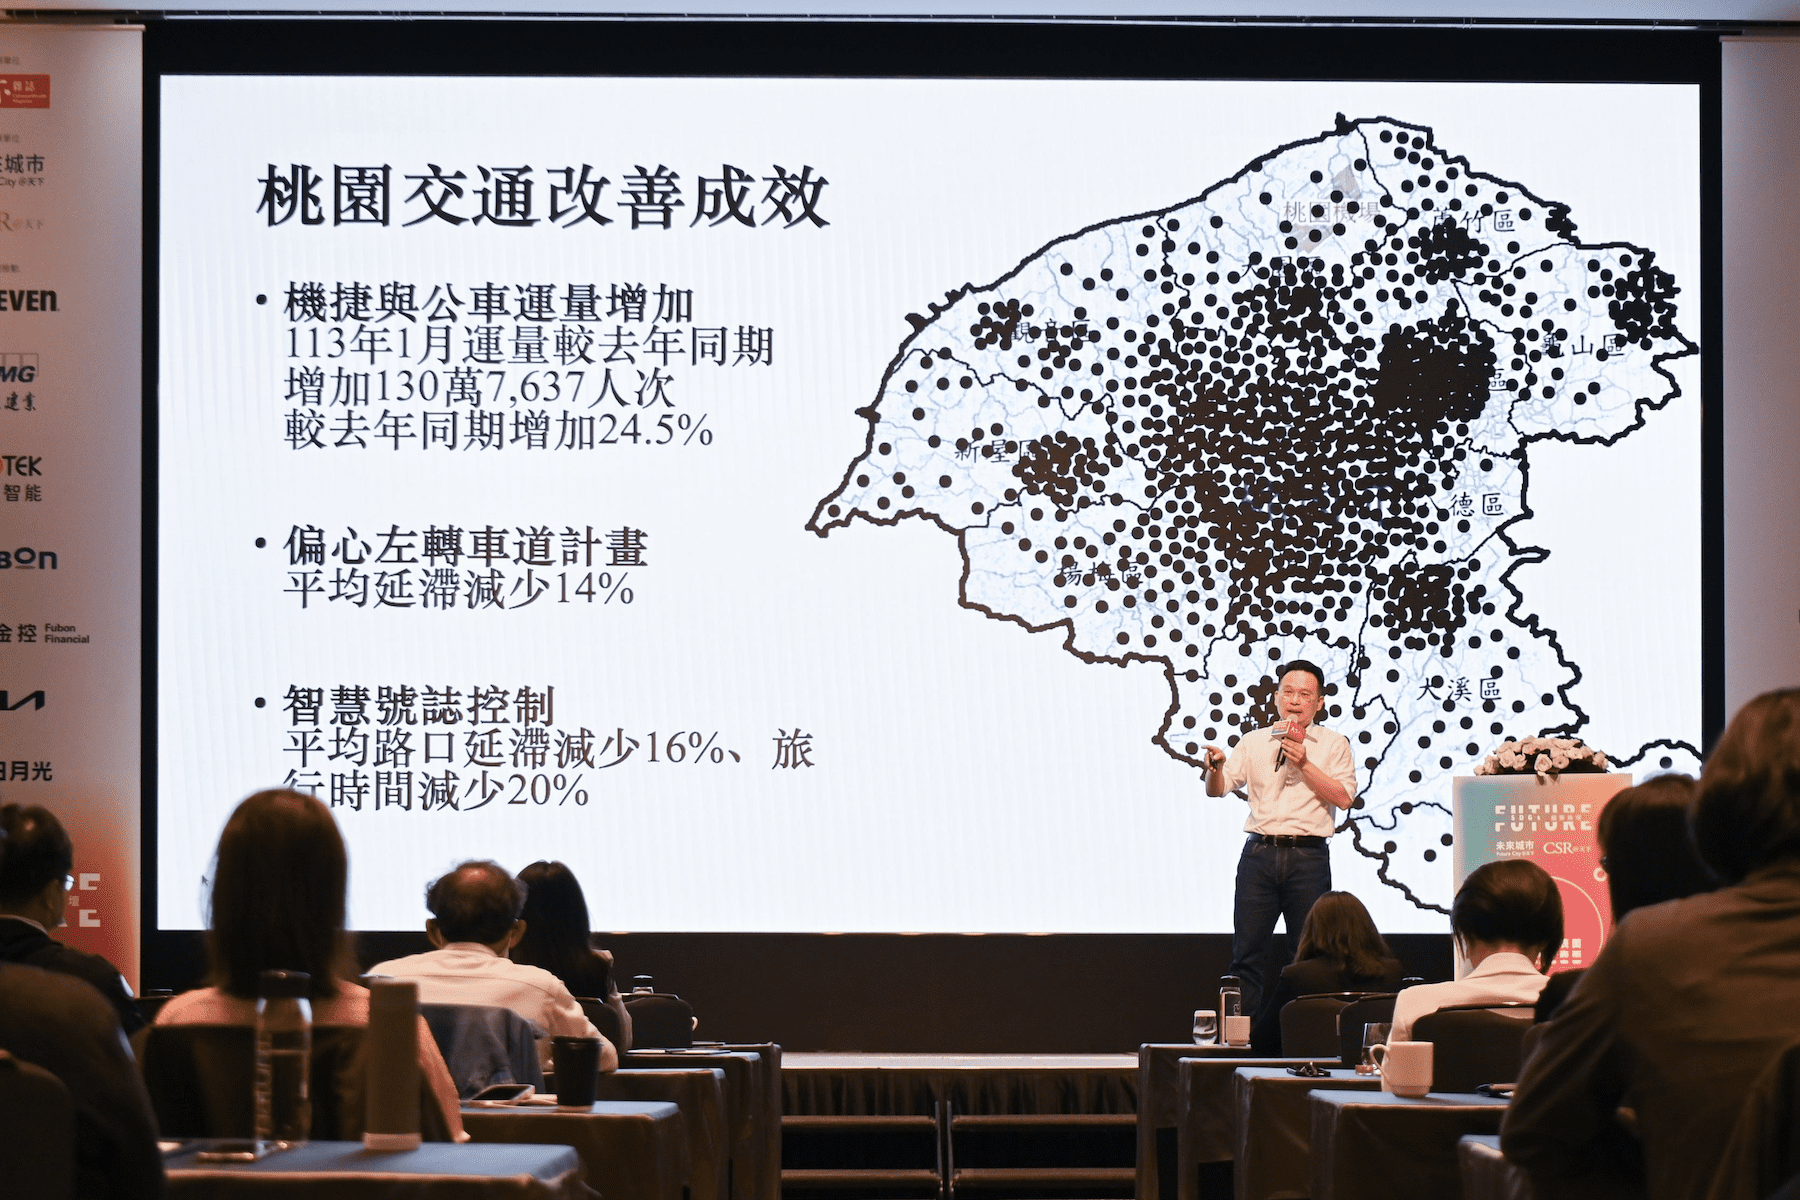 智慧科技助力桃園轉型      蘇俊賓演講啟發城市發展思維